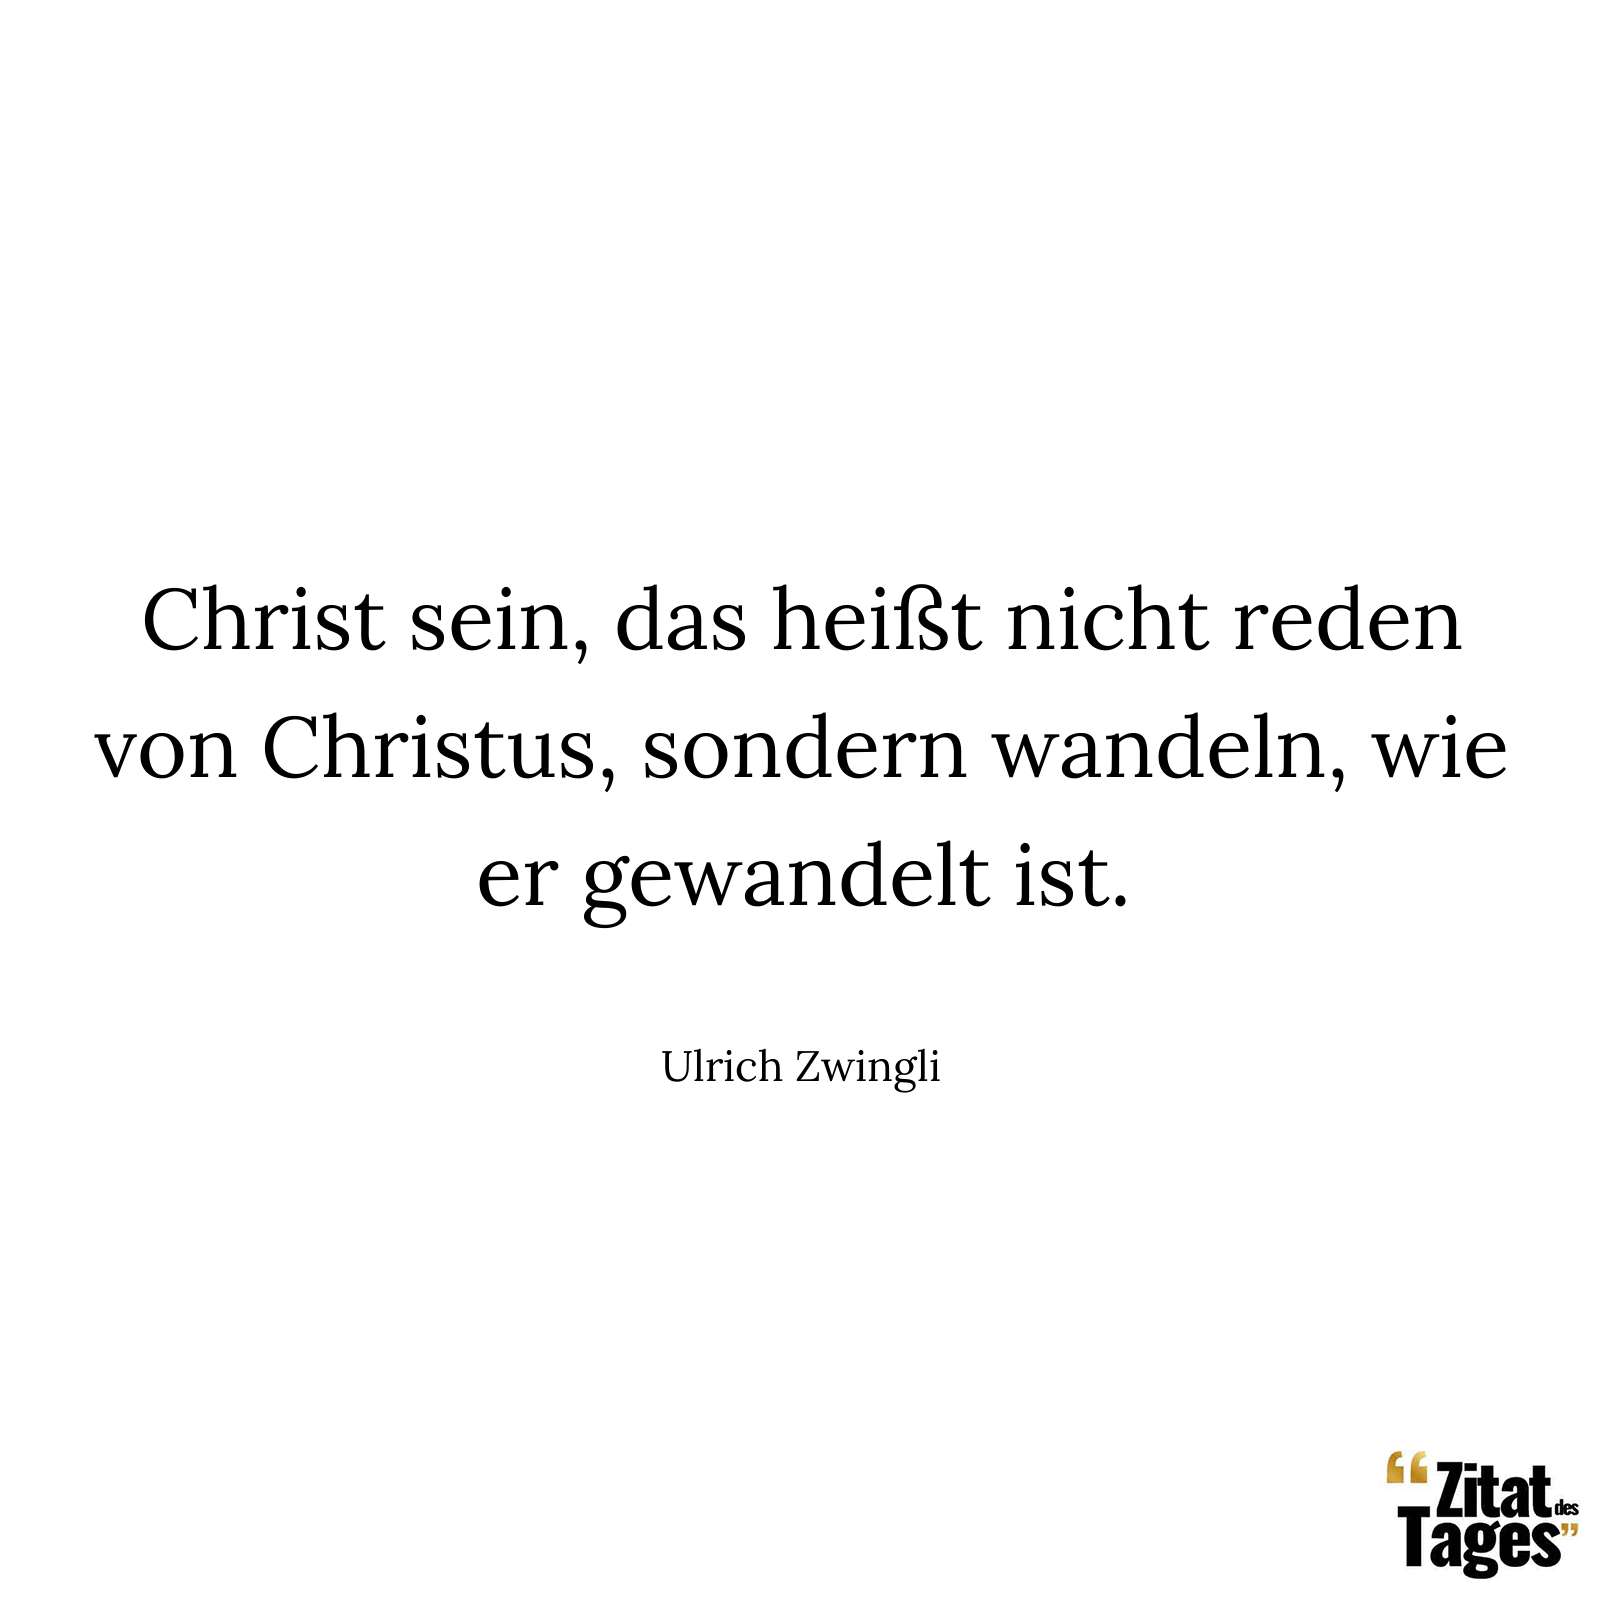 Christ sein, das heißt nicht reden von Christus, sondern wandeln, wie er gewandelt ist. - Ulrich Zwingli